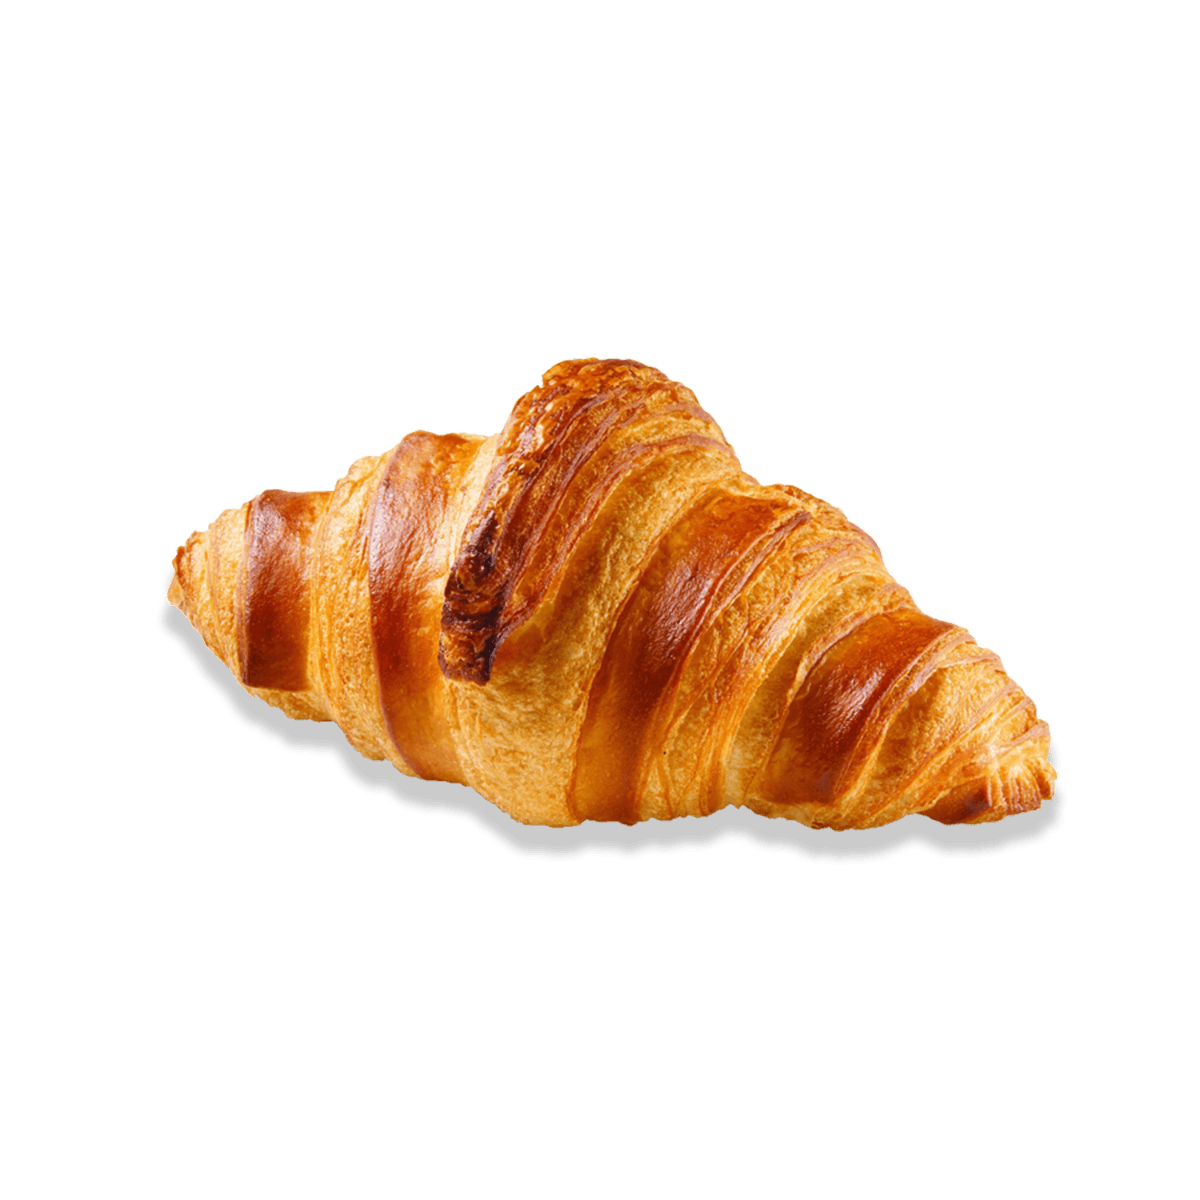 Ube cream filled croissant - Bridor